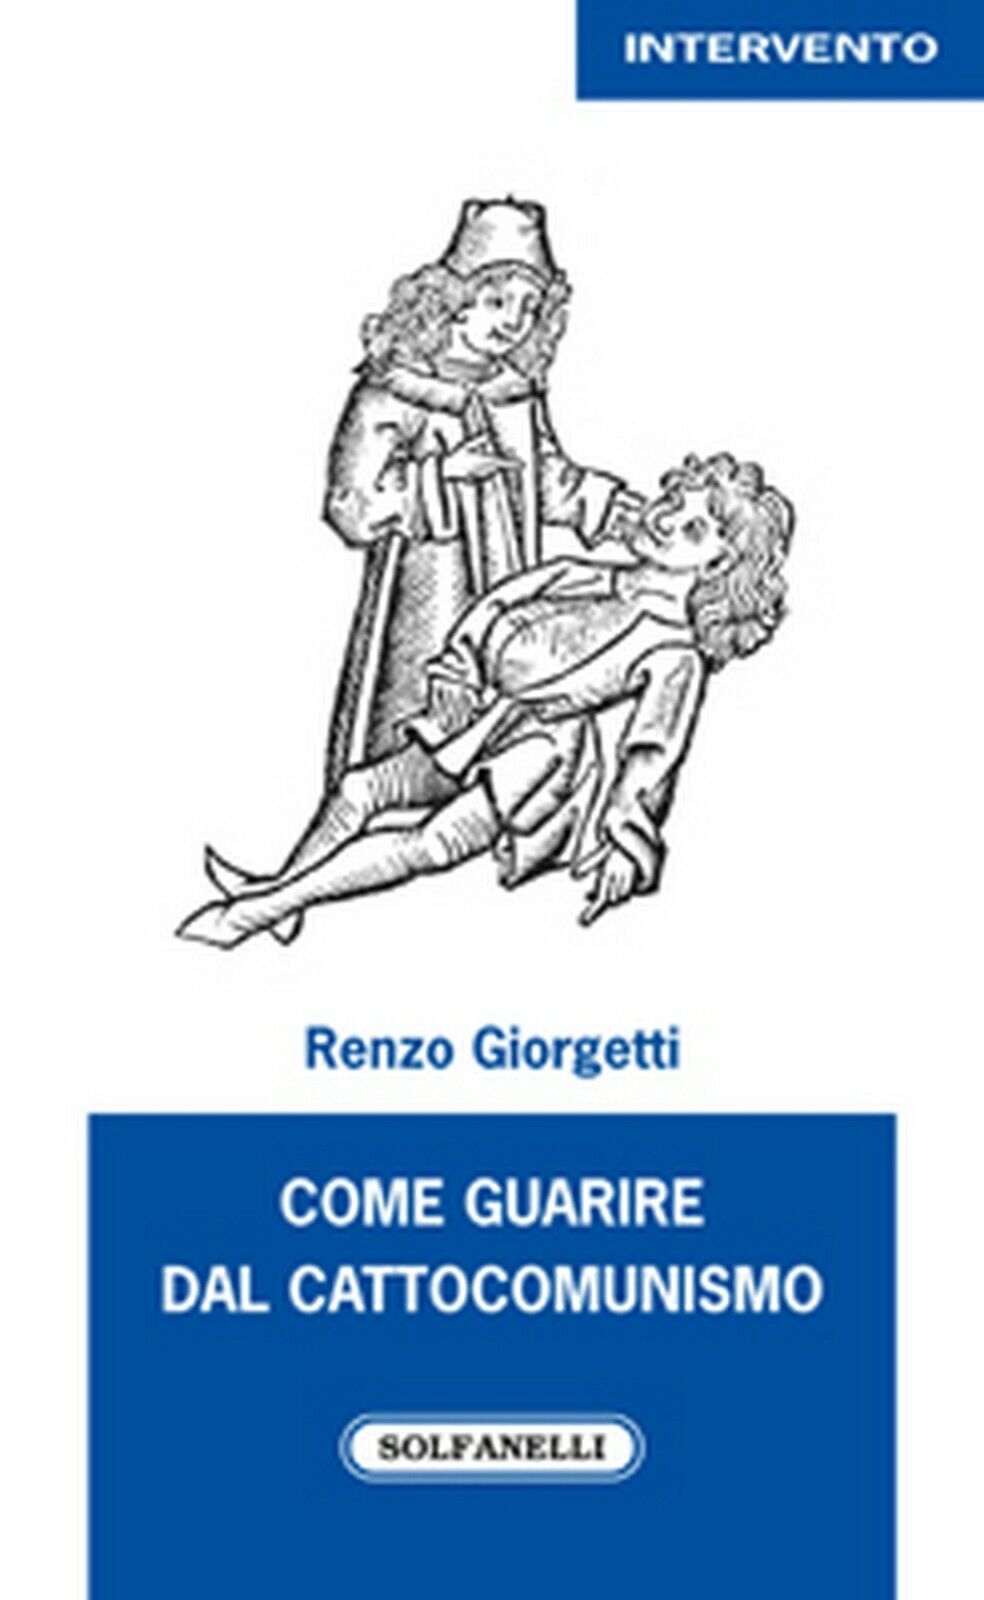 COME GUARIRE DAL CATTOCOMUNISMO  di Renzo Giorgetti,  Solfanelli Edizioni